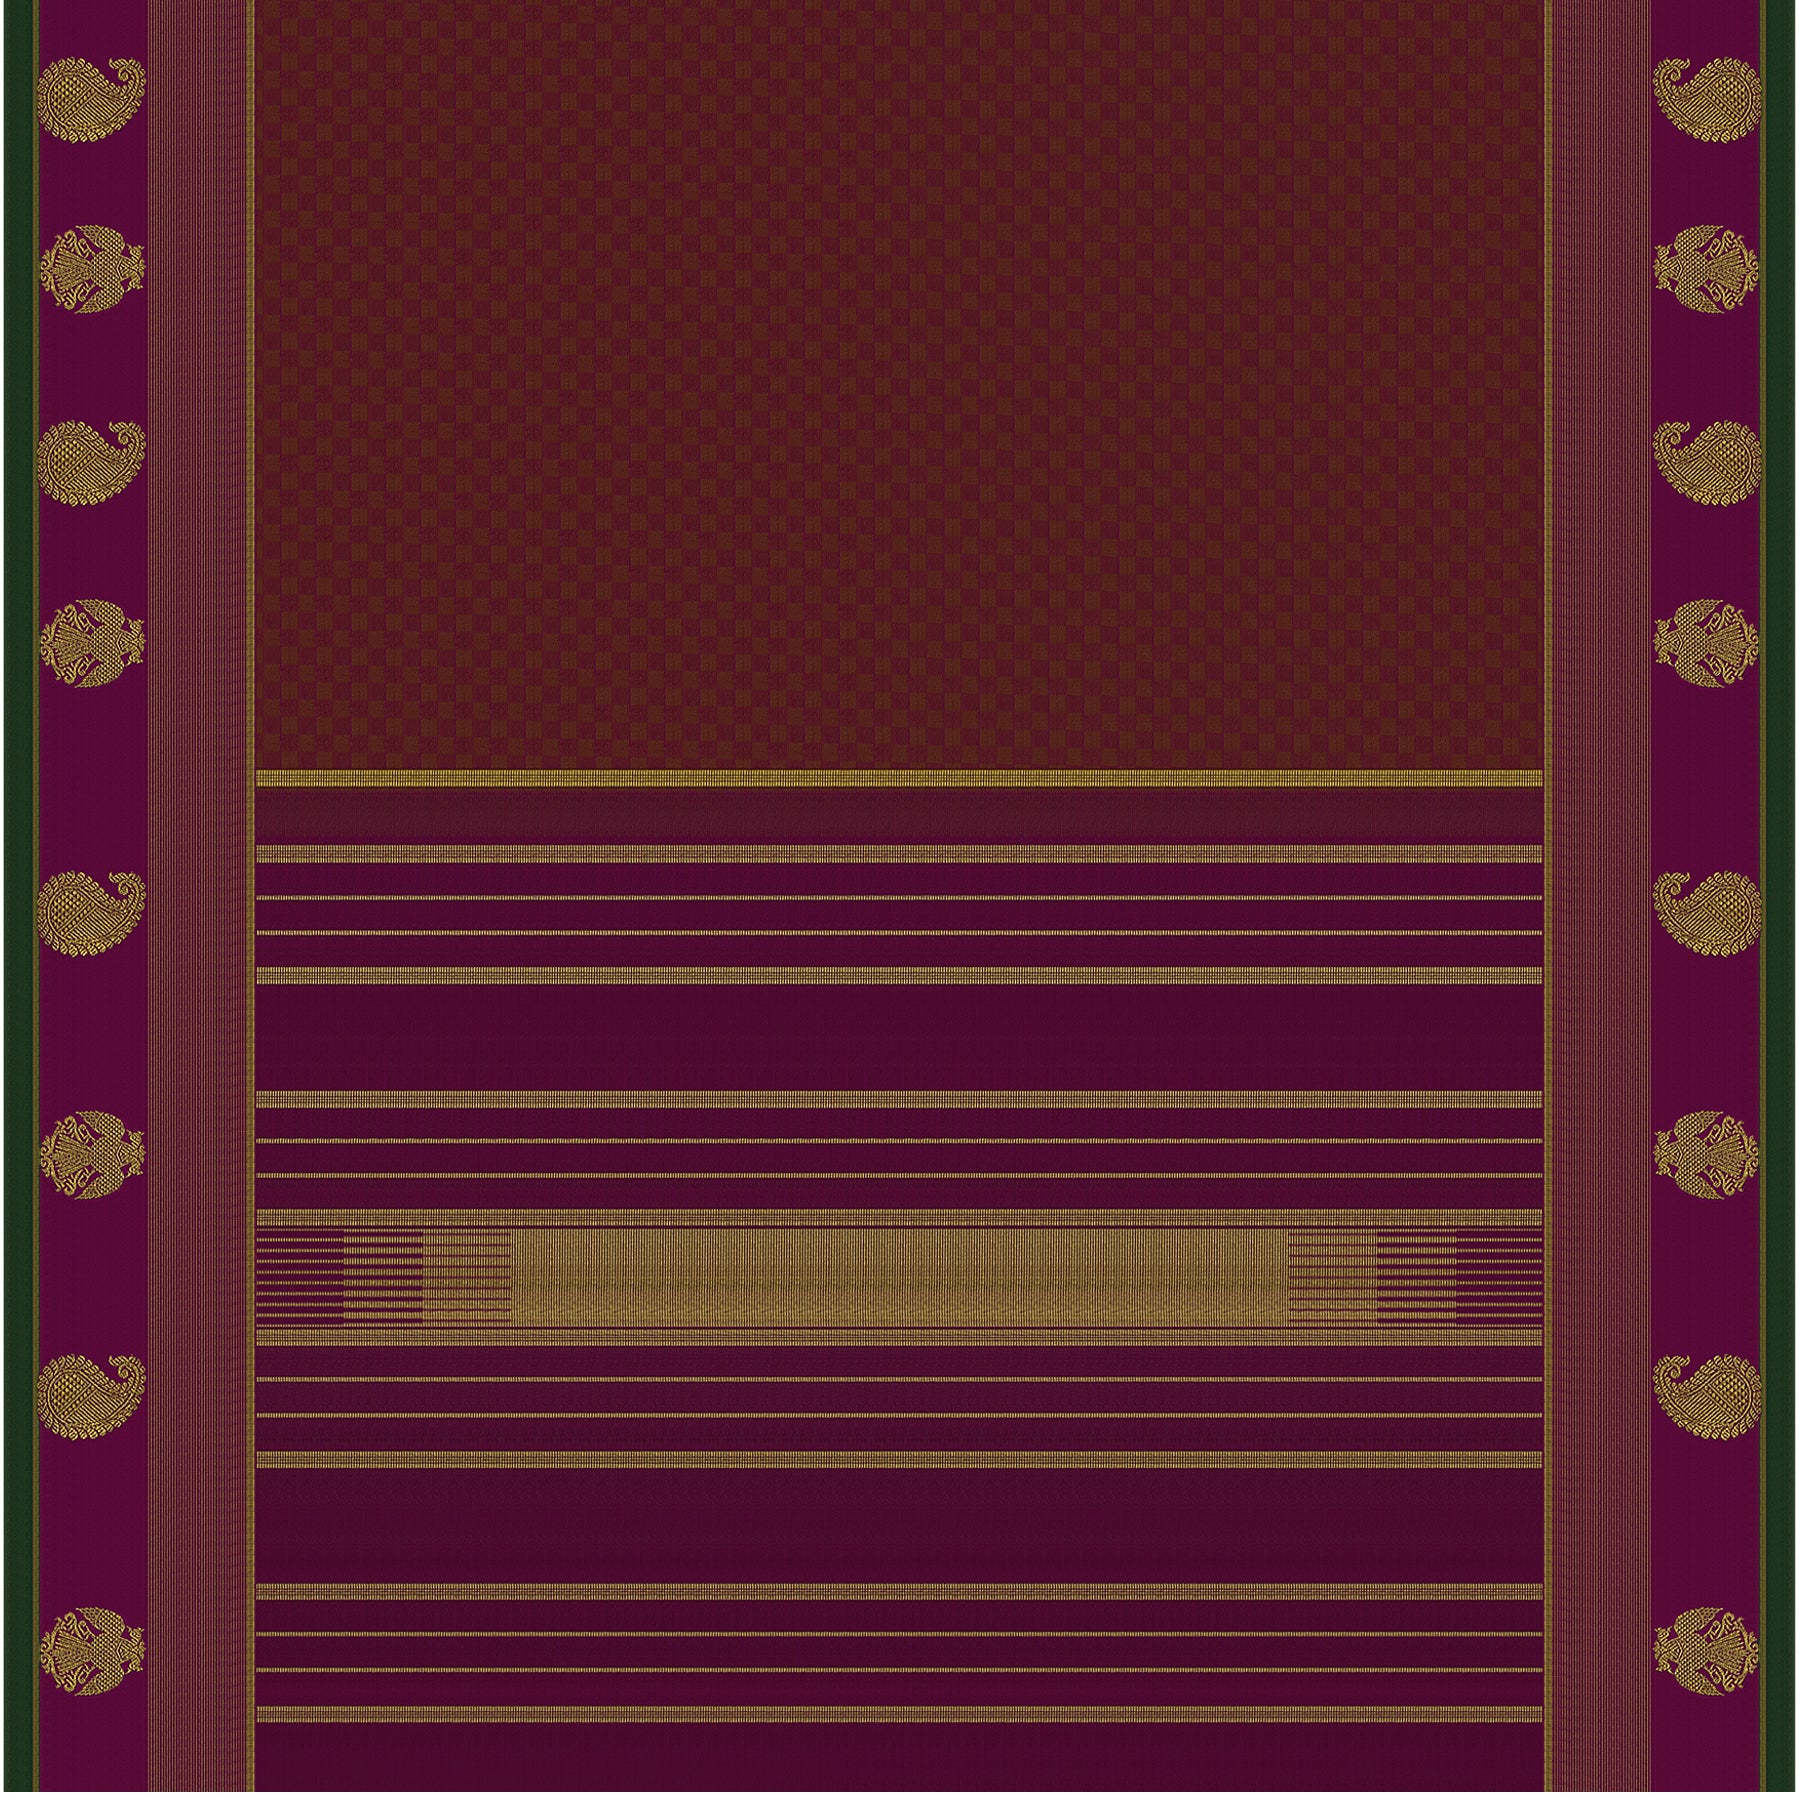 Kanakavalli Kanjivaram Silk Sari 23-599-HS001-08151 - Full View